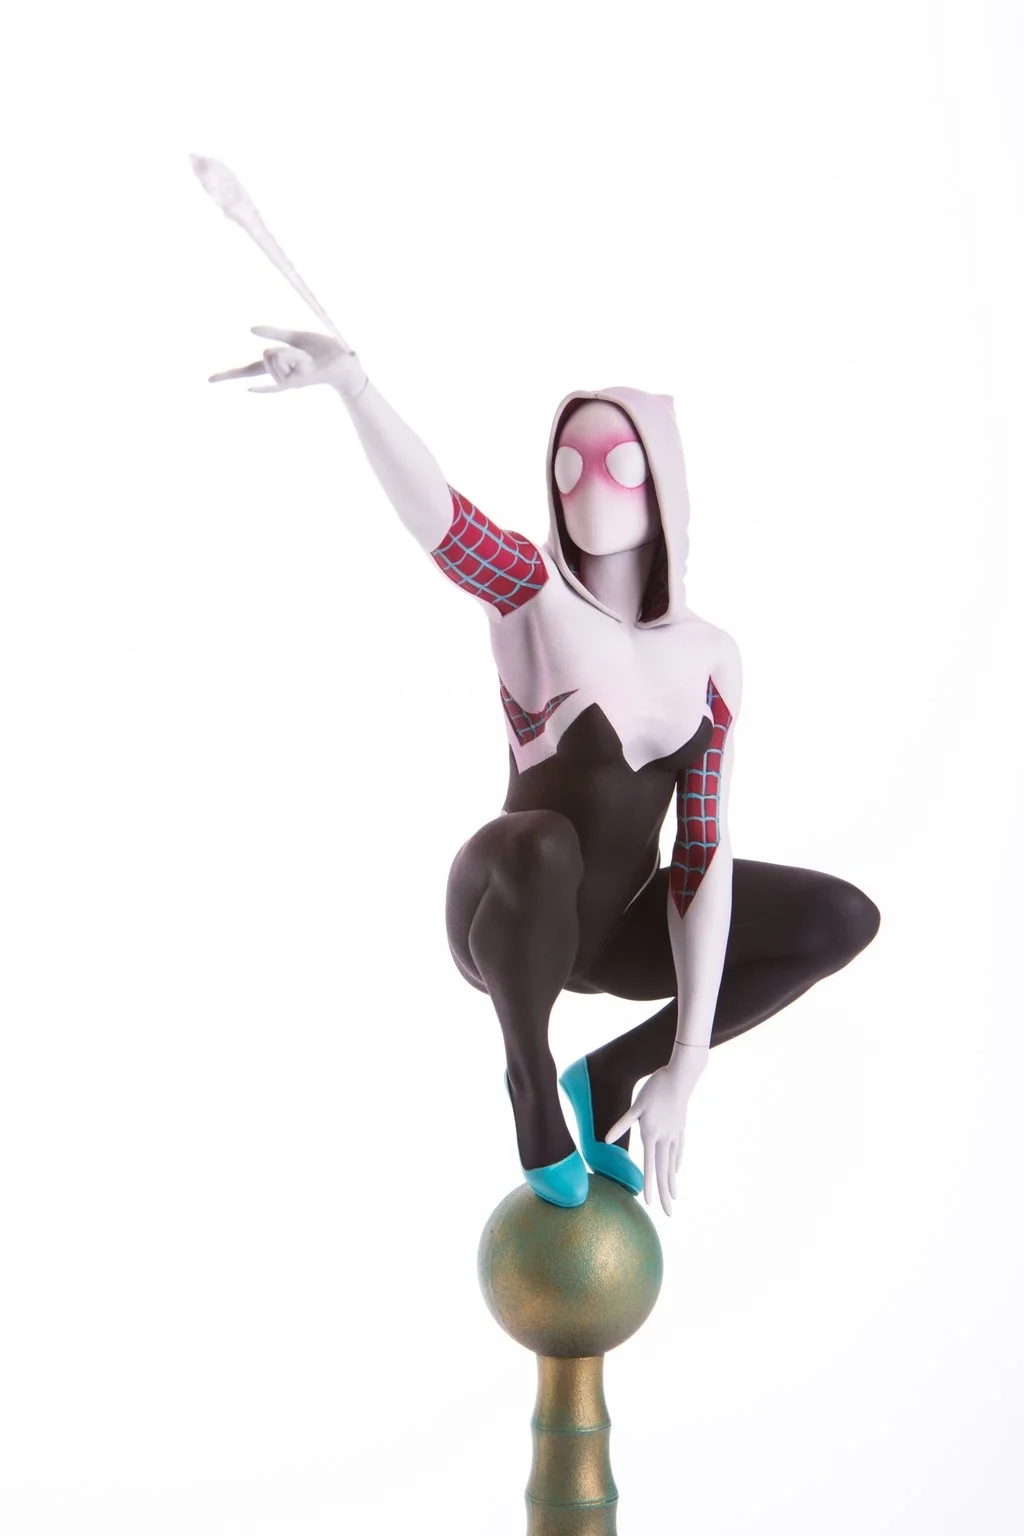 Статуя одной из самых интересных альтернативных версий Человека-паука - фото 6